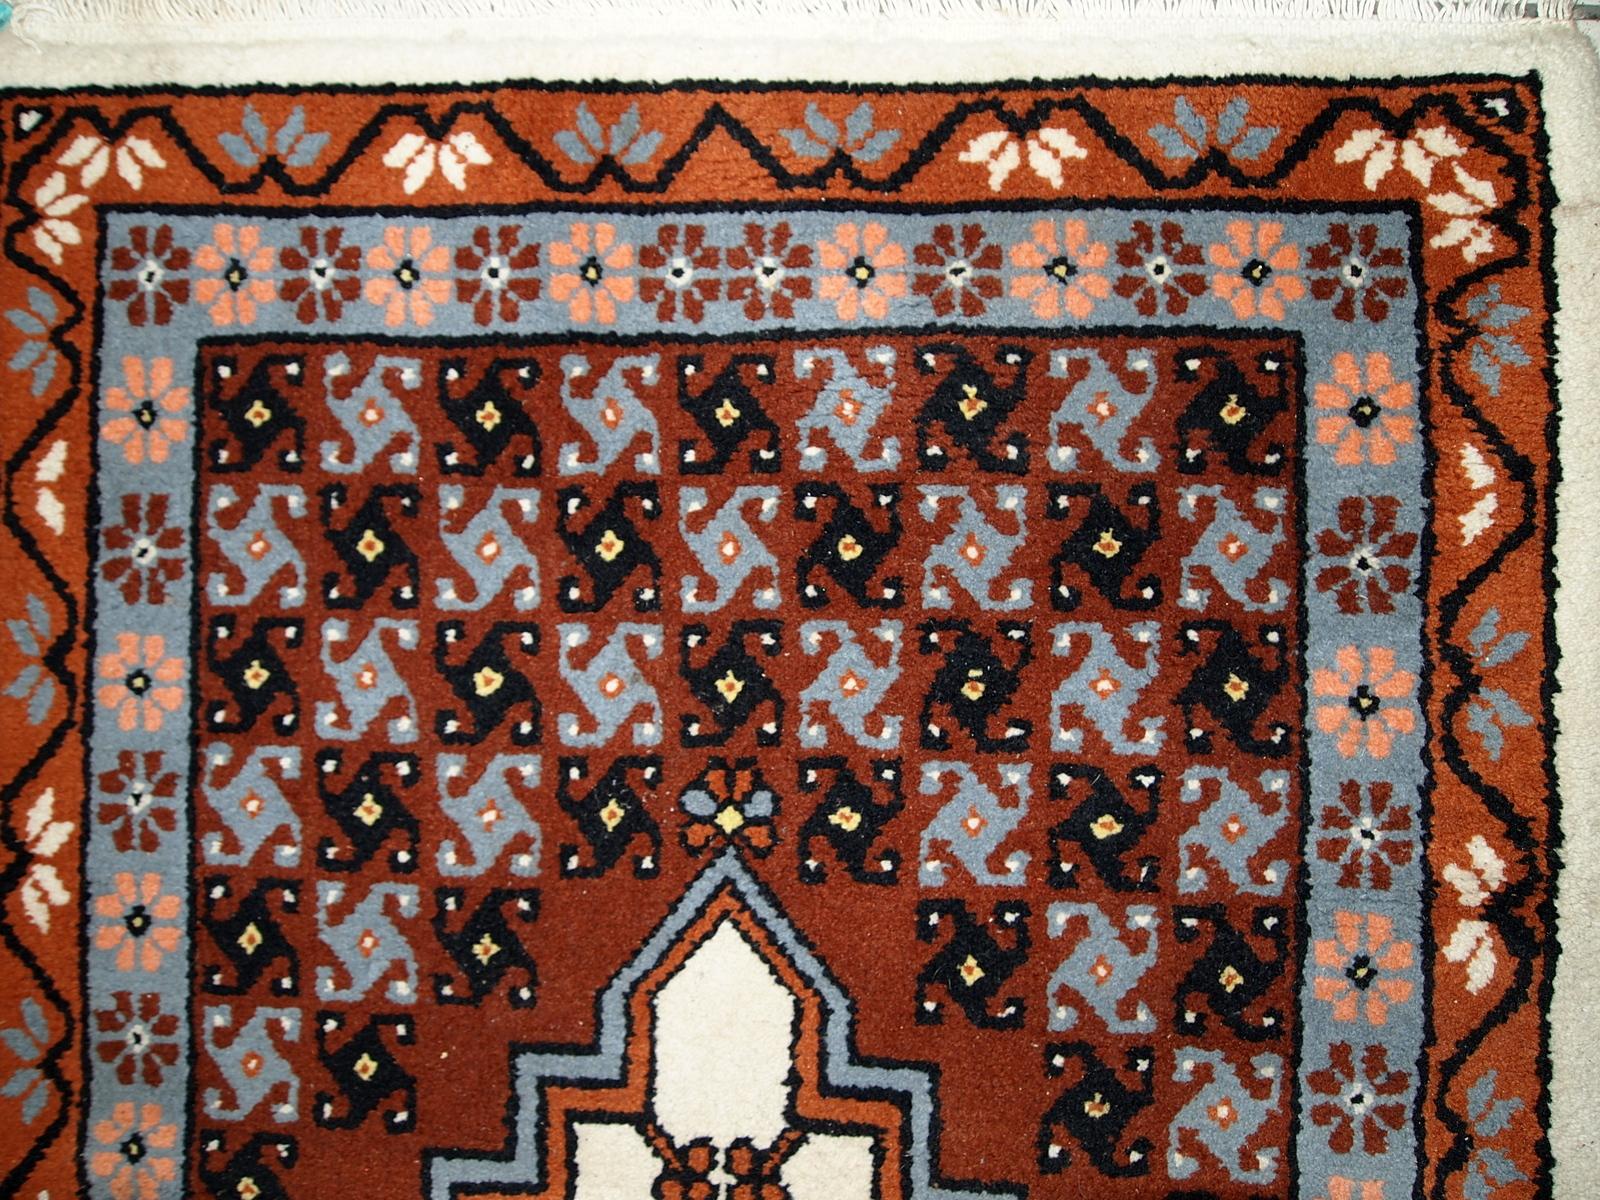 Vintage Berberteppich aus Marokko in gutem Originalzustand. Der Teppich wurde Ende des 20. Jahrhunderts aus Wolle hergestellt.

-Zustand: original gut,

-Umgebung: 1970er Jahre,

-Größe: 2,6' x 5,6' (81 cm x 170 cm),

-MATERIAL: